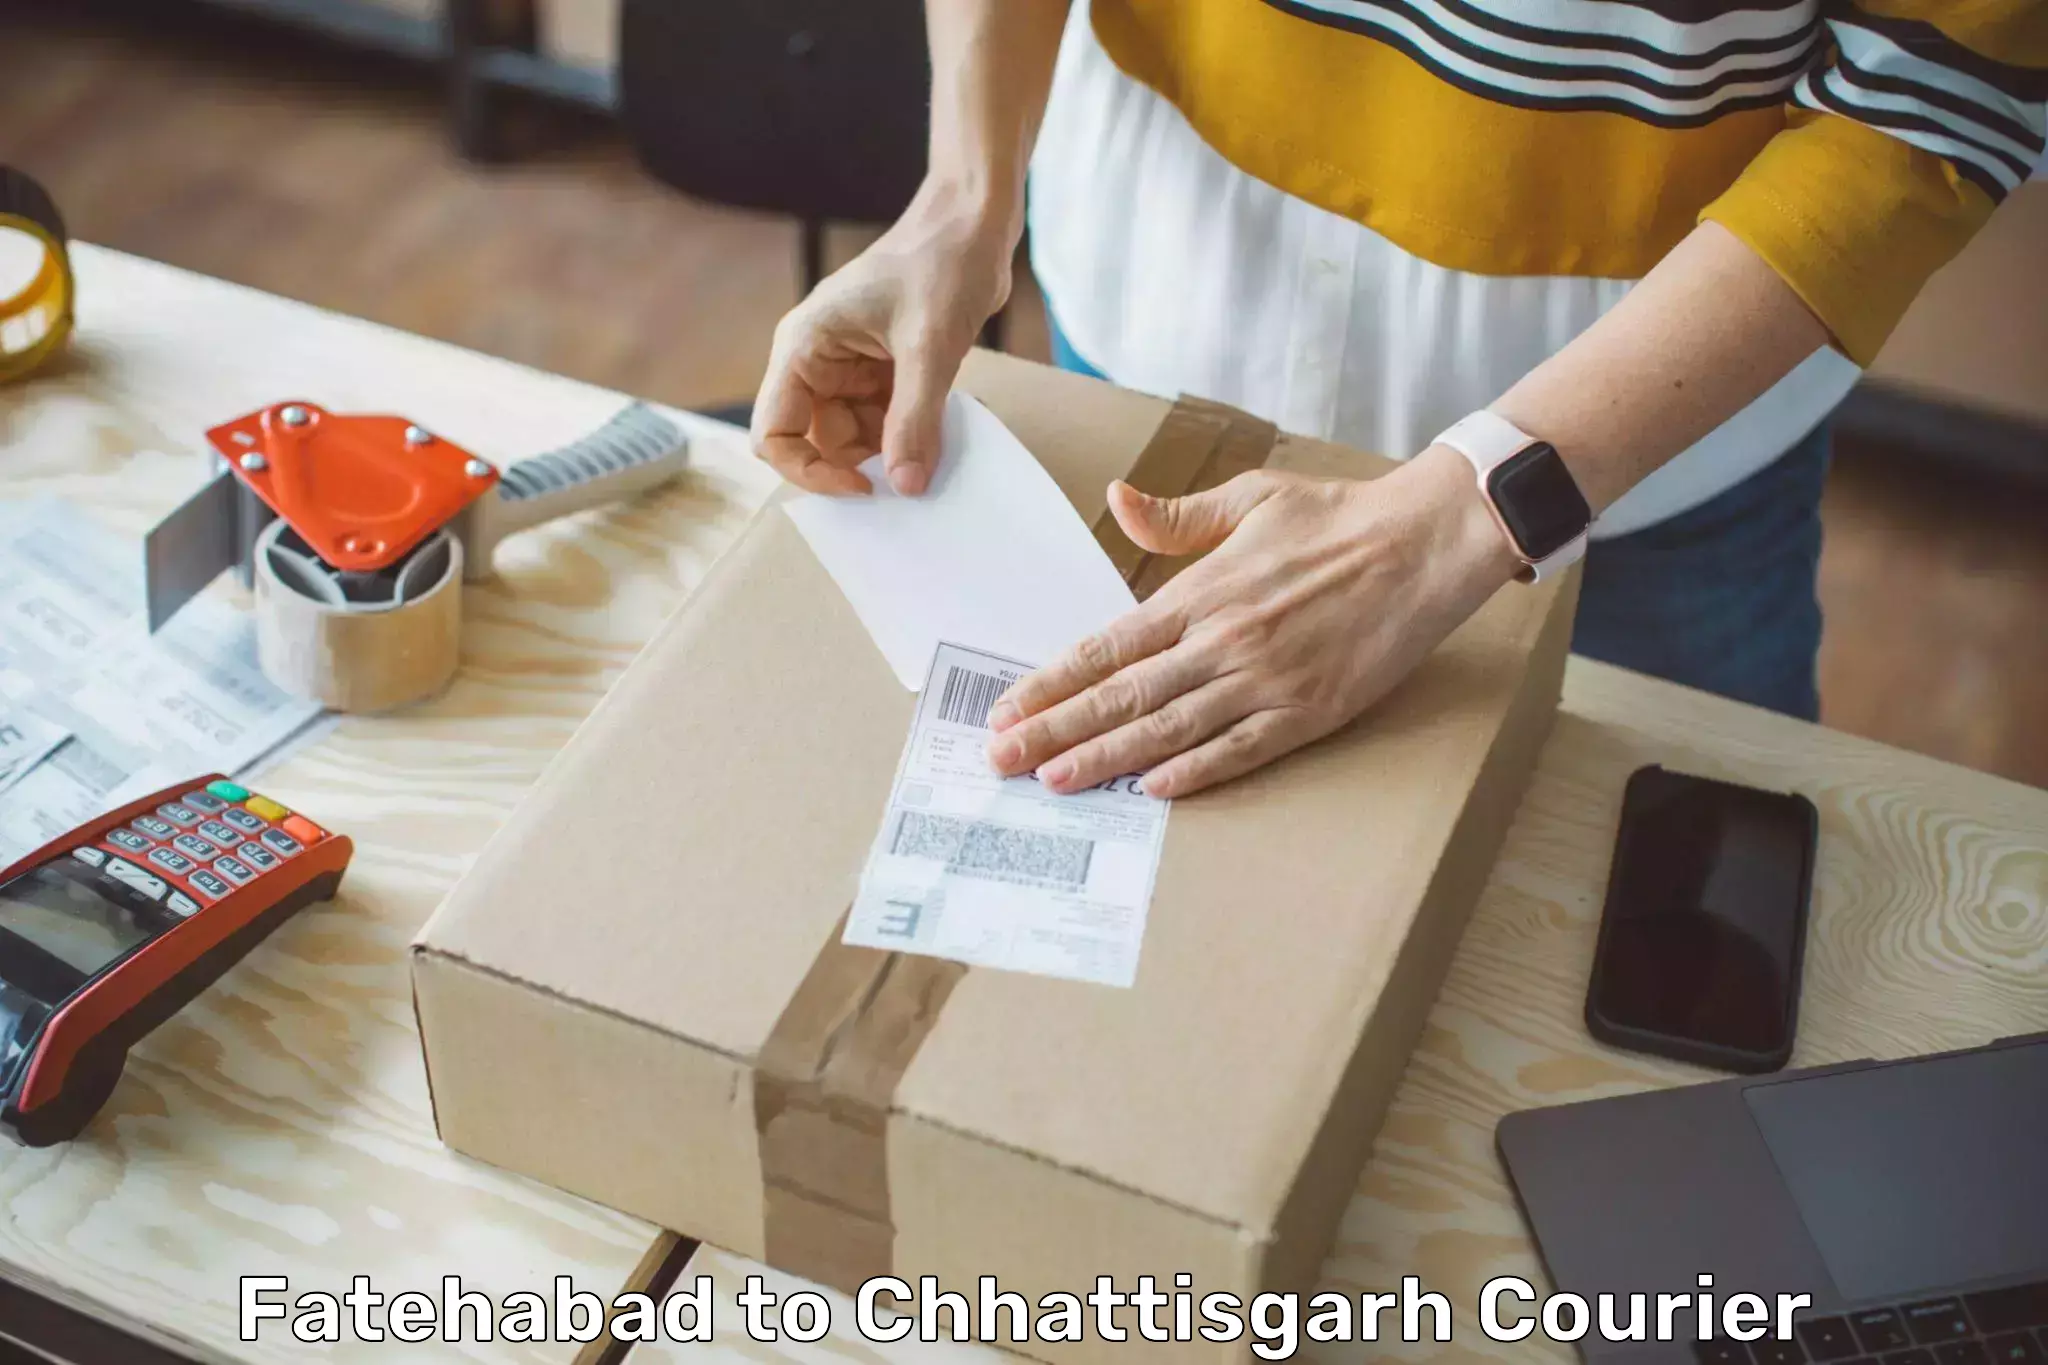 Cash on delivery service Fatehabad to Chhattisgarh